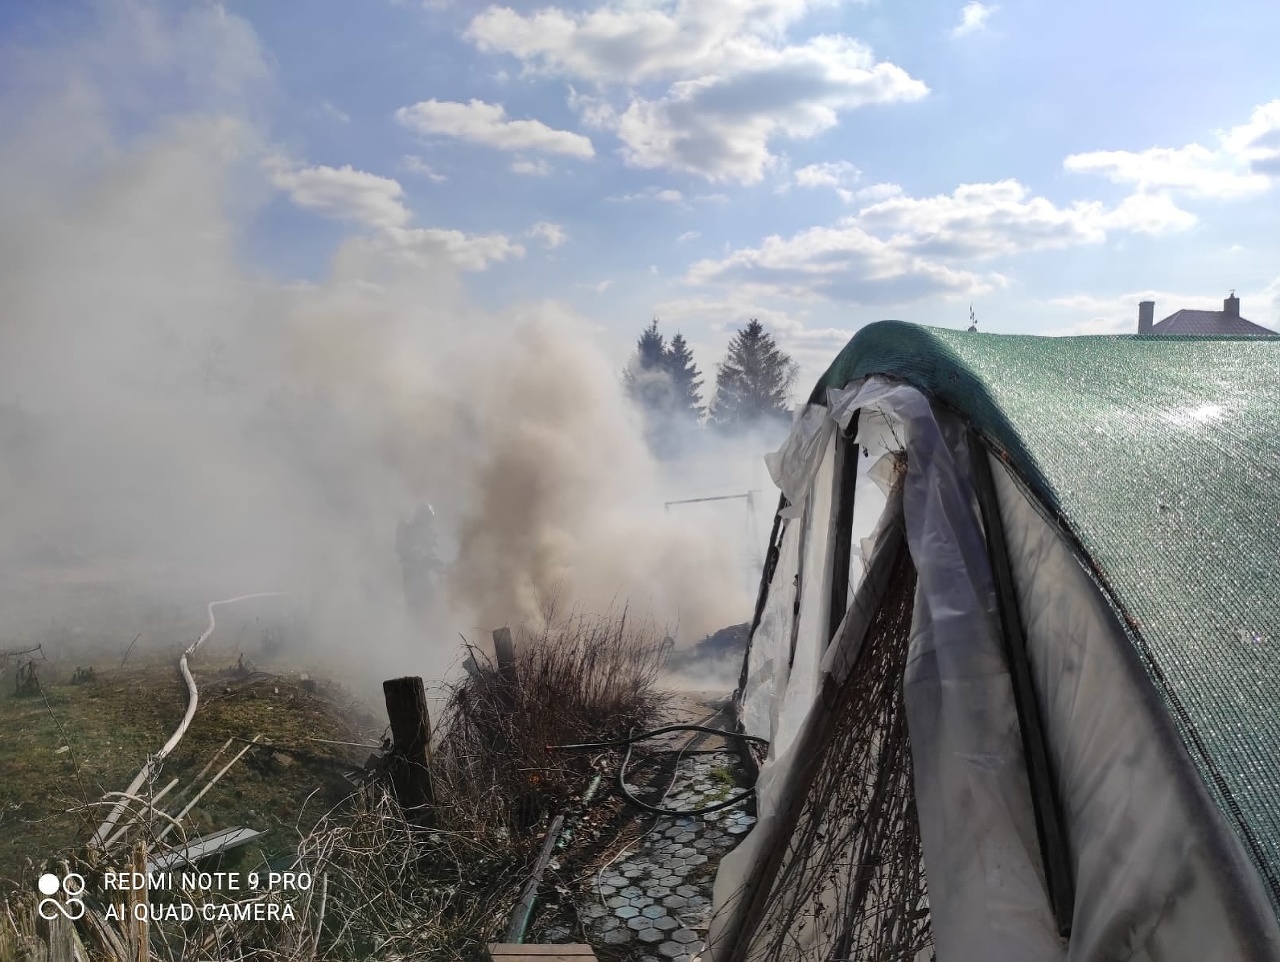 Hasiči zo Šurian a z Nových Zámkov momentálne zasahujú pri požiari fóliovníka v obci Bánov v okrese Nové Zámky. 